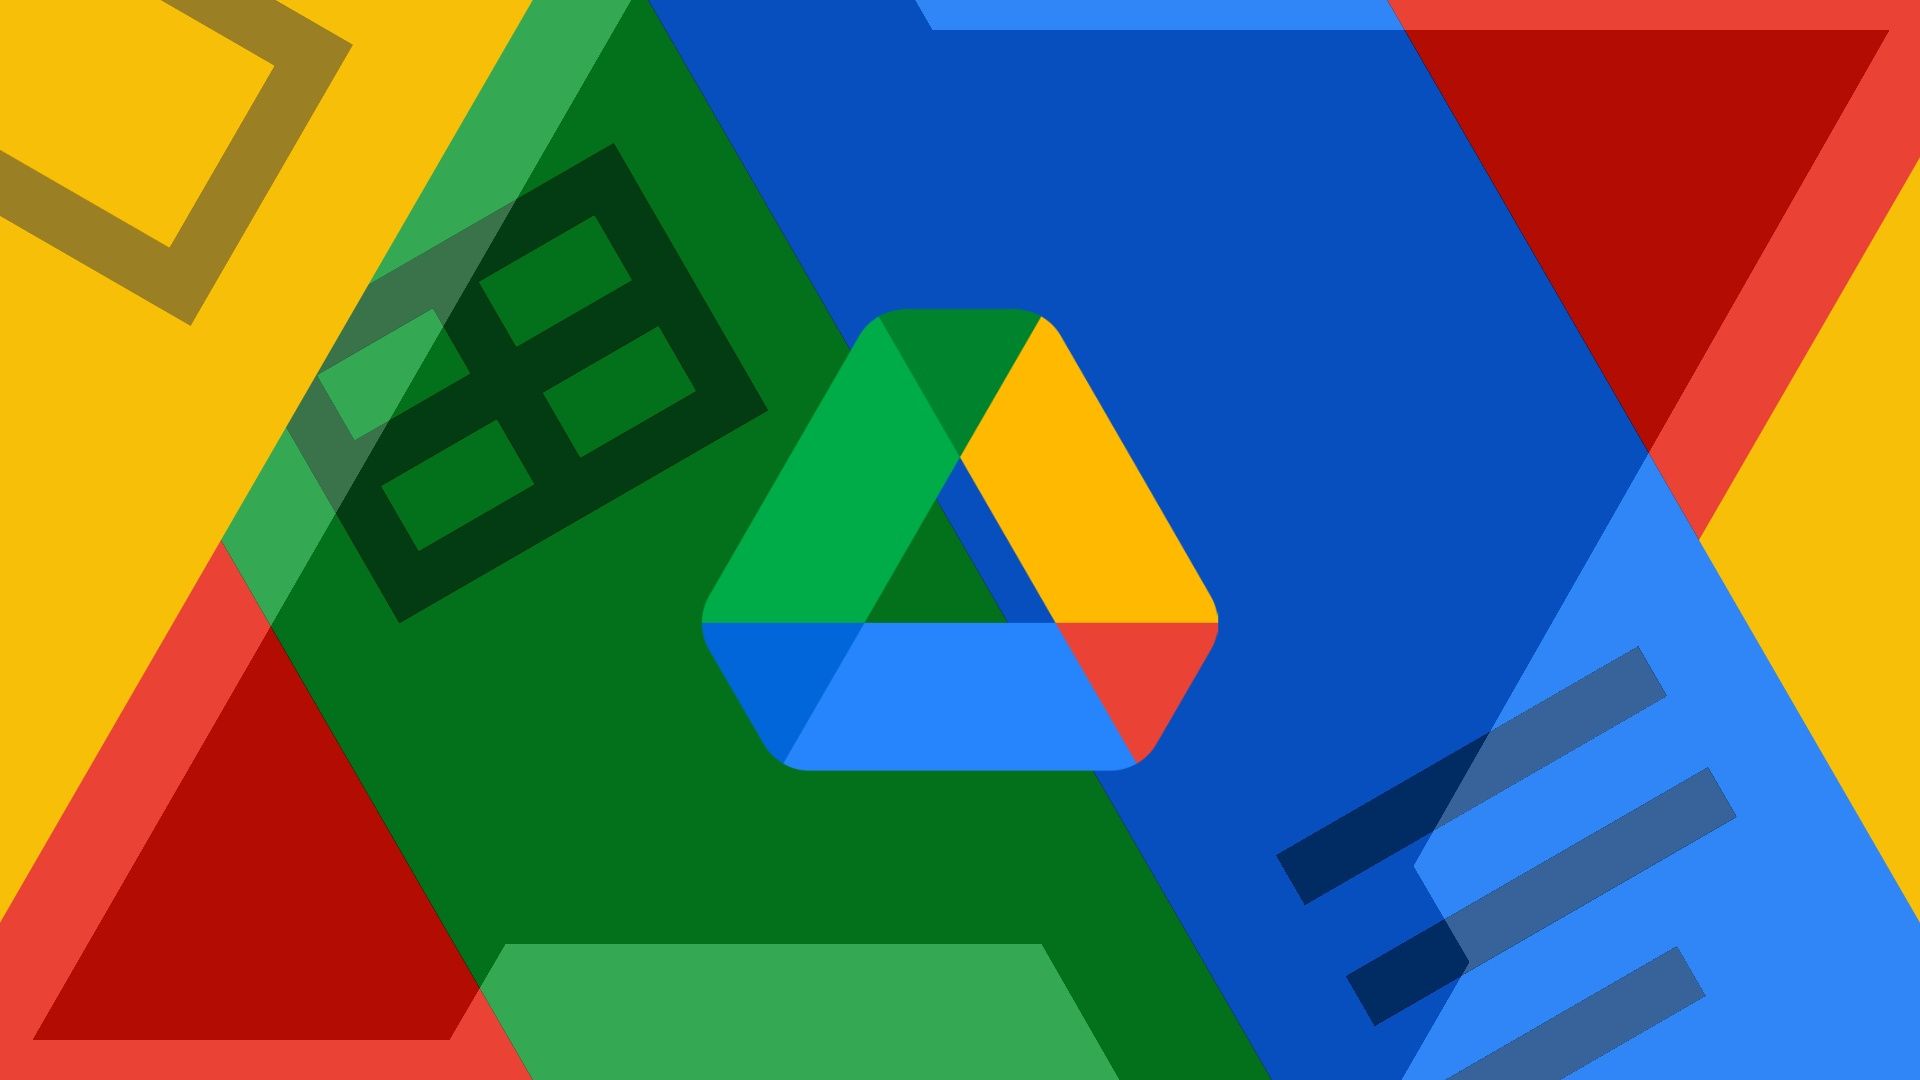 O logotipo do Google Drive em um plano de fundo com o logotipo Android Police e os logotipos e cores do Google Sheets, Google Docs e Google Slides